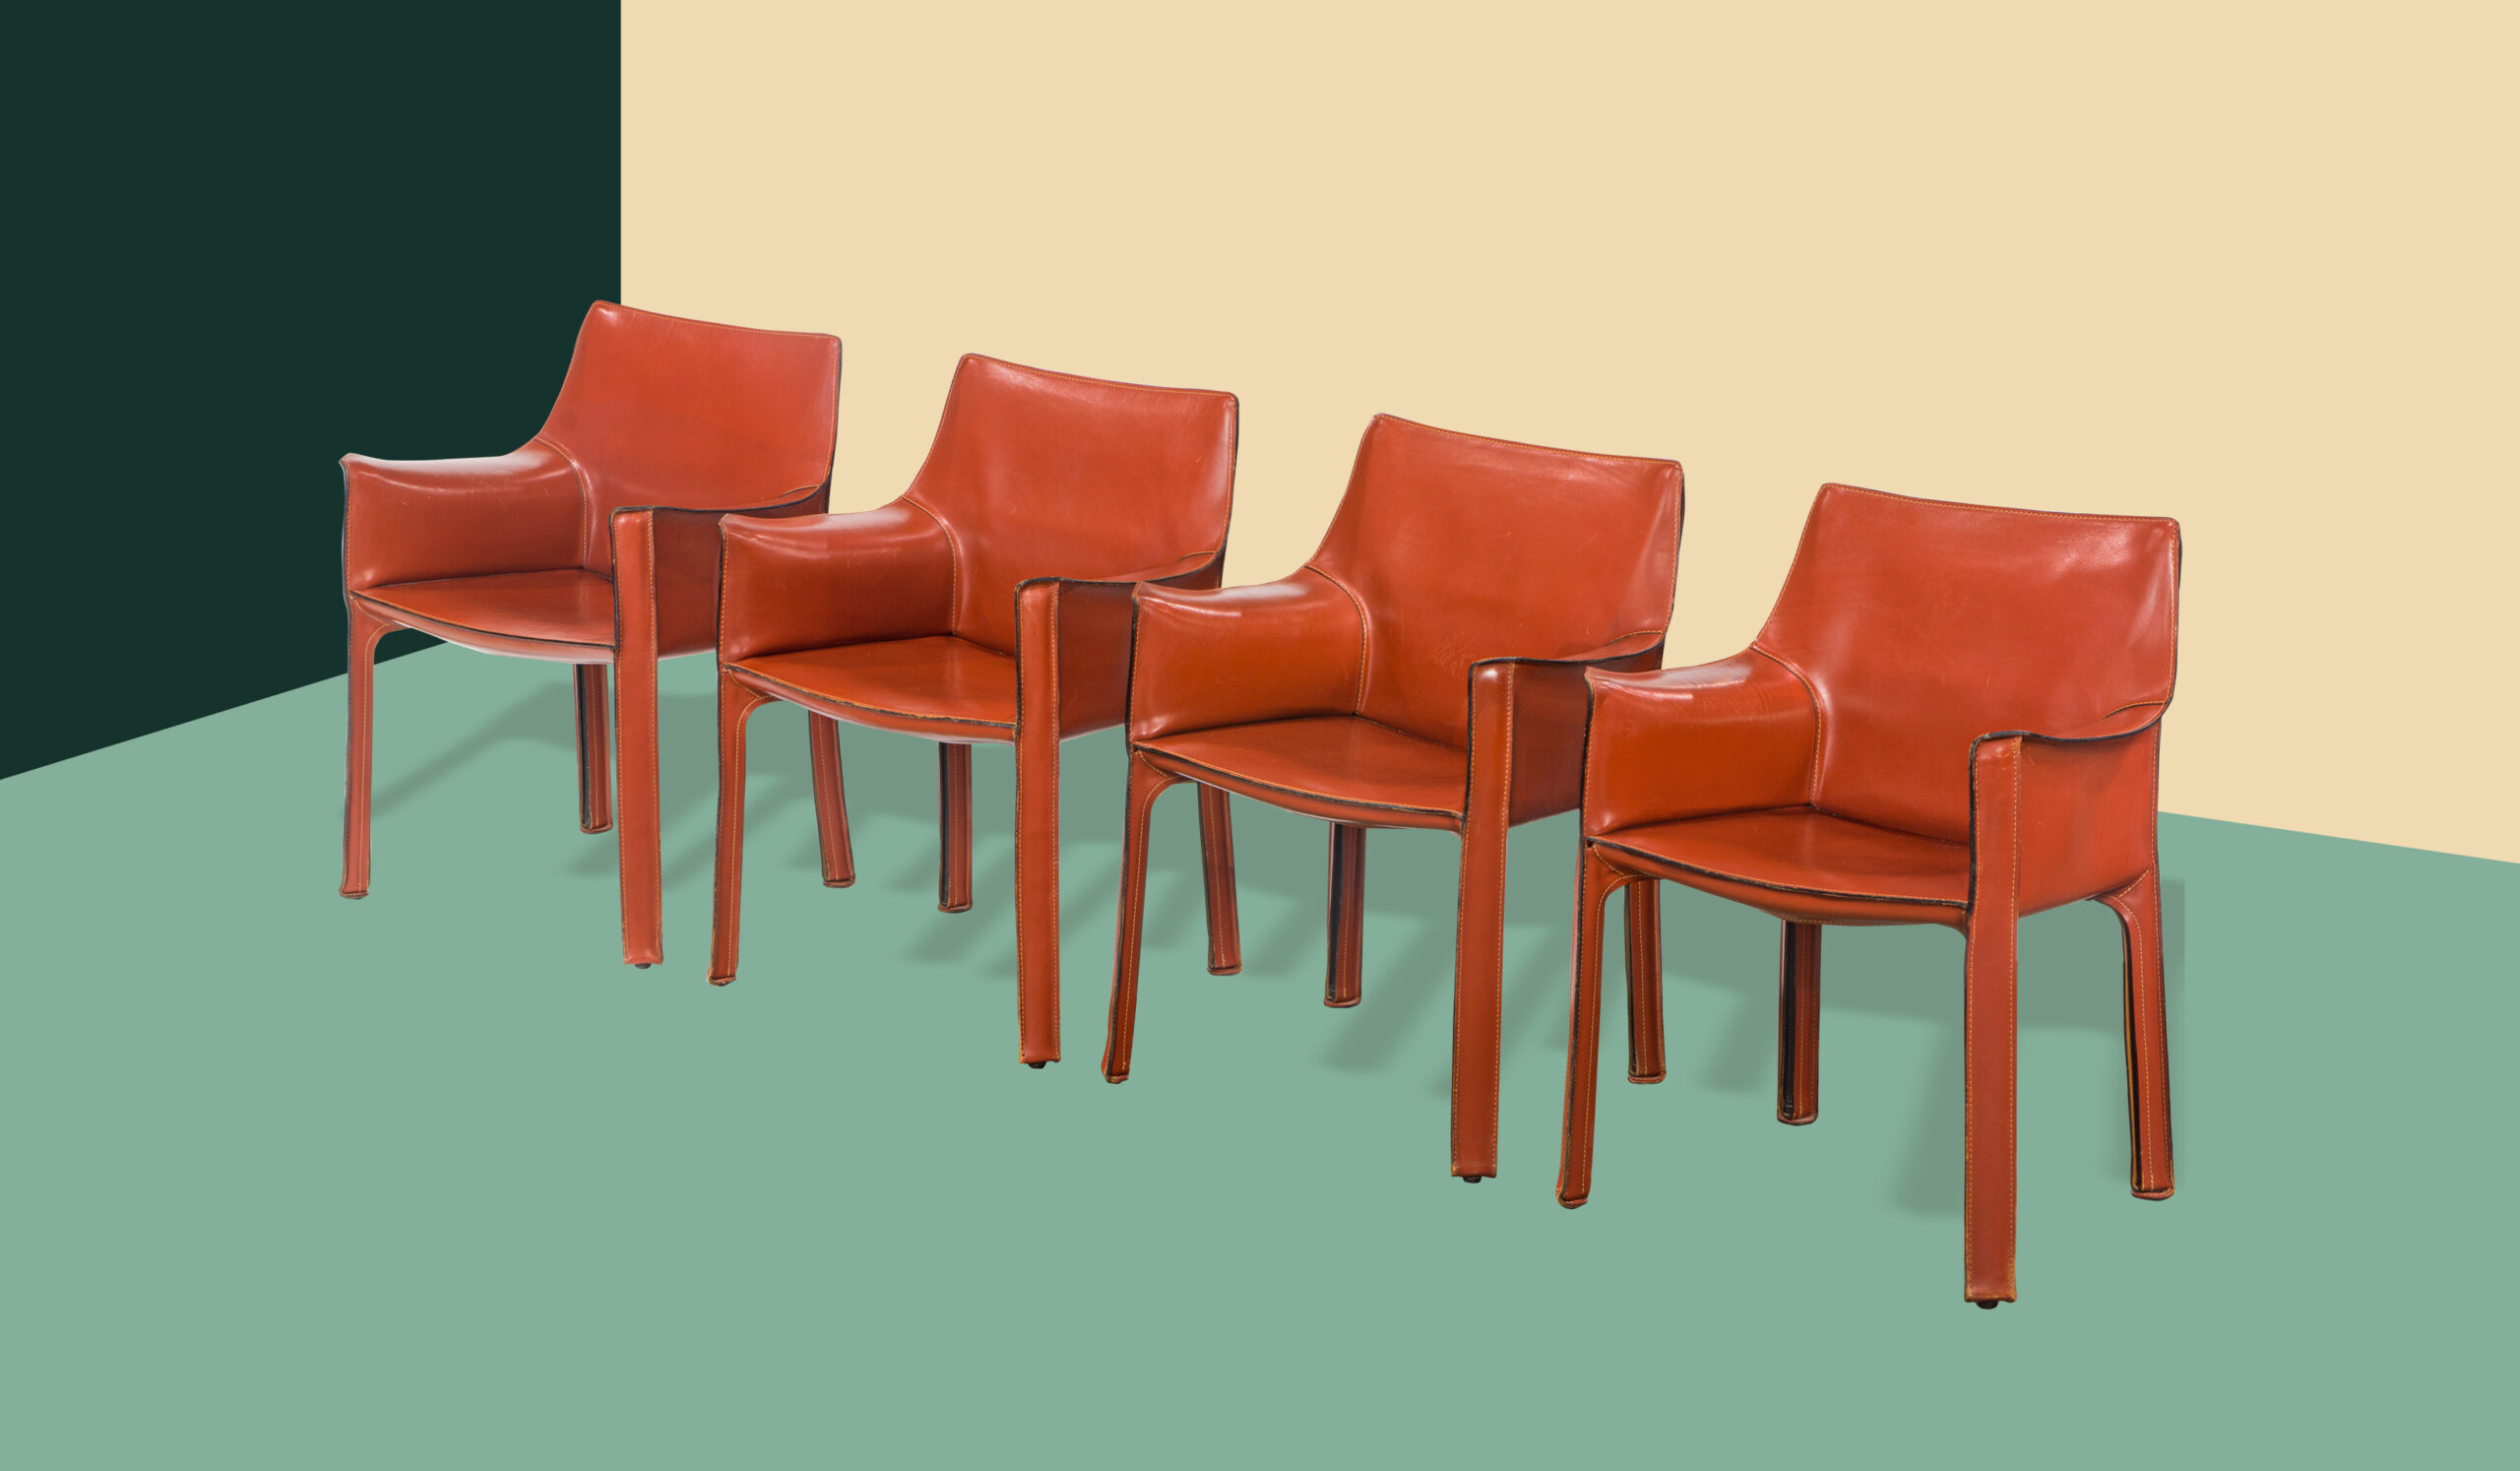 Mario Bellini Cab Chairs, Model 413.